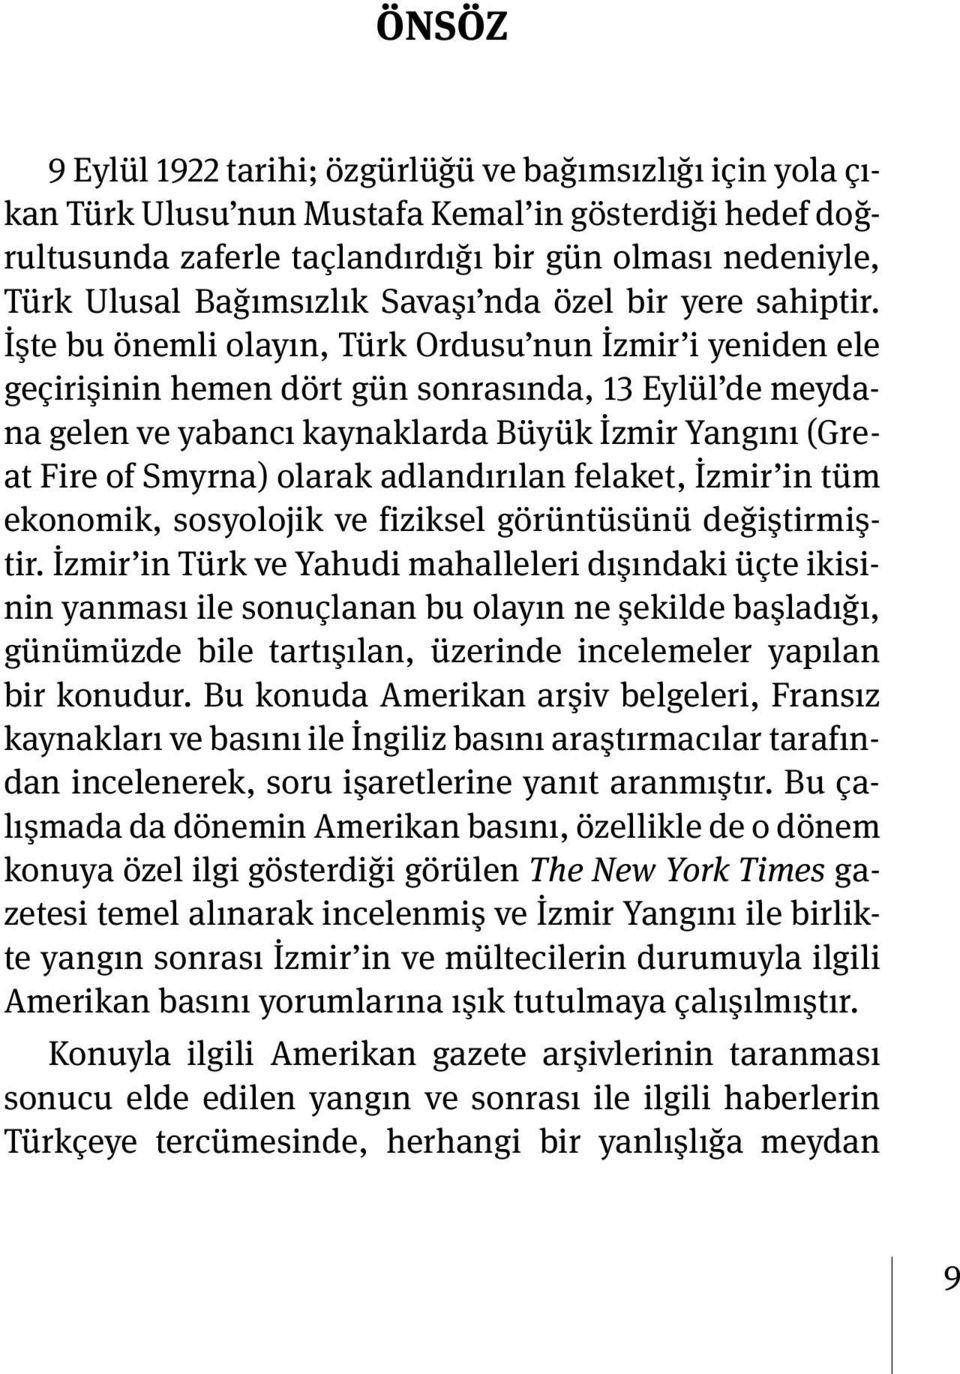 İşte bu önemli olayın, Türk Ordusu nun İzmir i yeniden ele geçirişinin hemen dört gün sonrasında, 13 Eylül de meydana gelen ve yabancı kaynaklarda Büyük İzmir Yangını (Great Fire of Smyrna) olarak